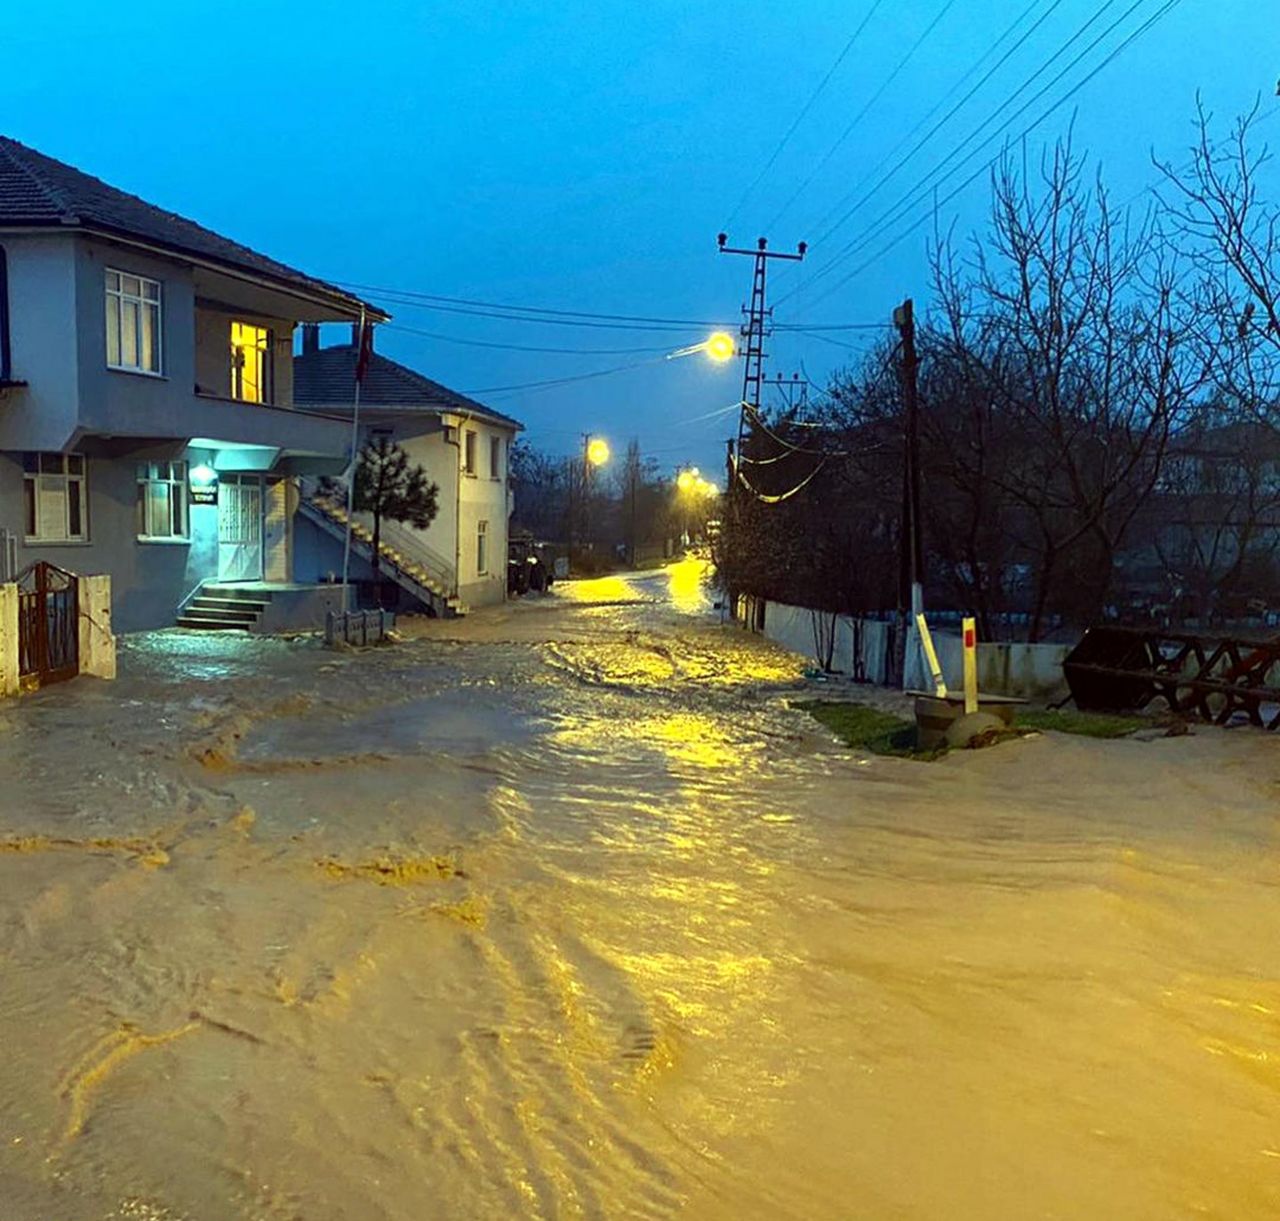 Sağanak yağış Trakya'yı felç etti, imdada AFAD, UMKE, askeri personel, polis, belediye, sağlık, Kızılay ekipleri yetişti - Sayfa:3